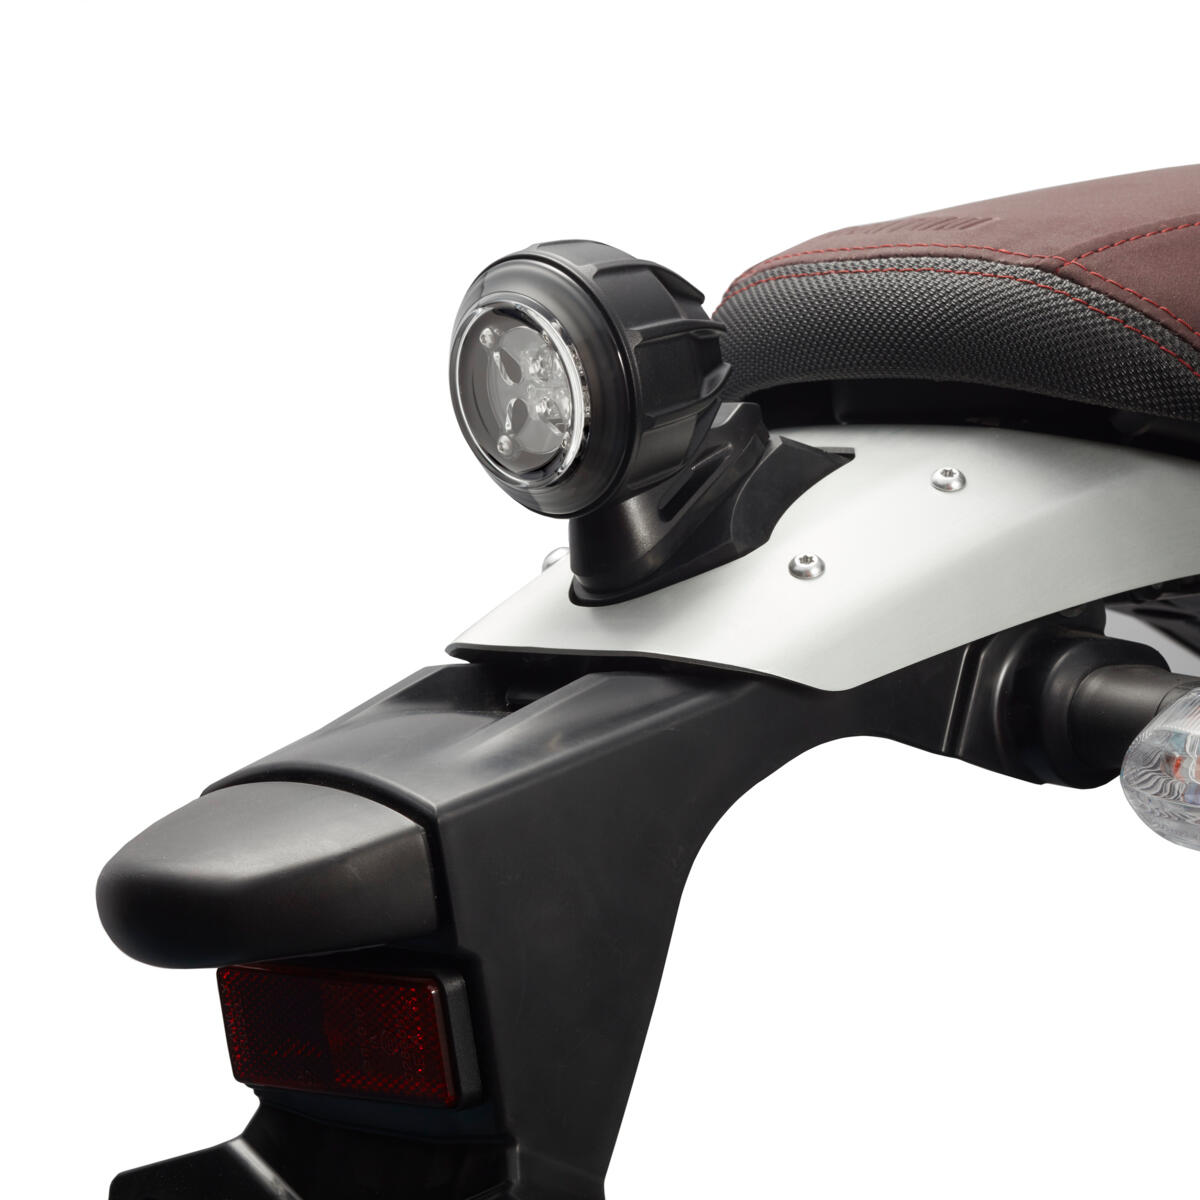 Moderna luce posteriore a LED che conferisce al veicolo un elegante tocco di modernità con un look ancora più autentico.